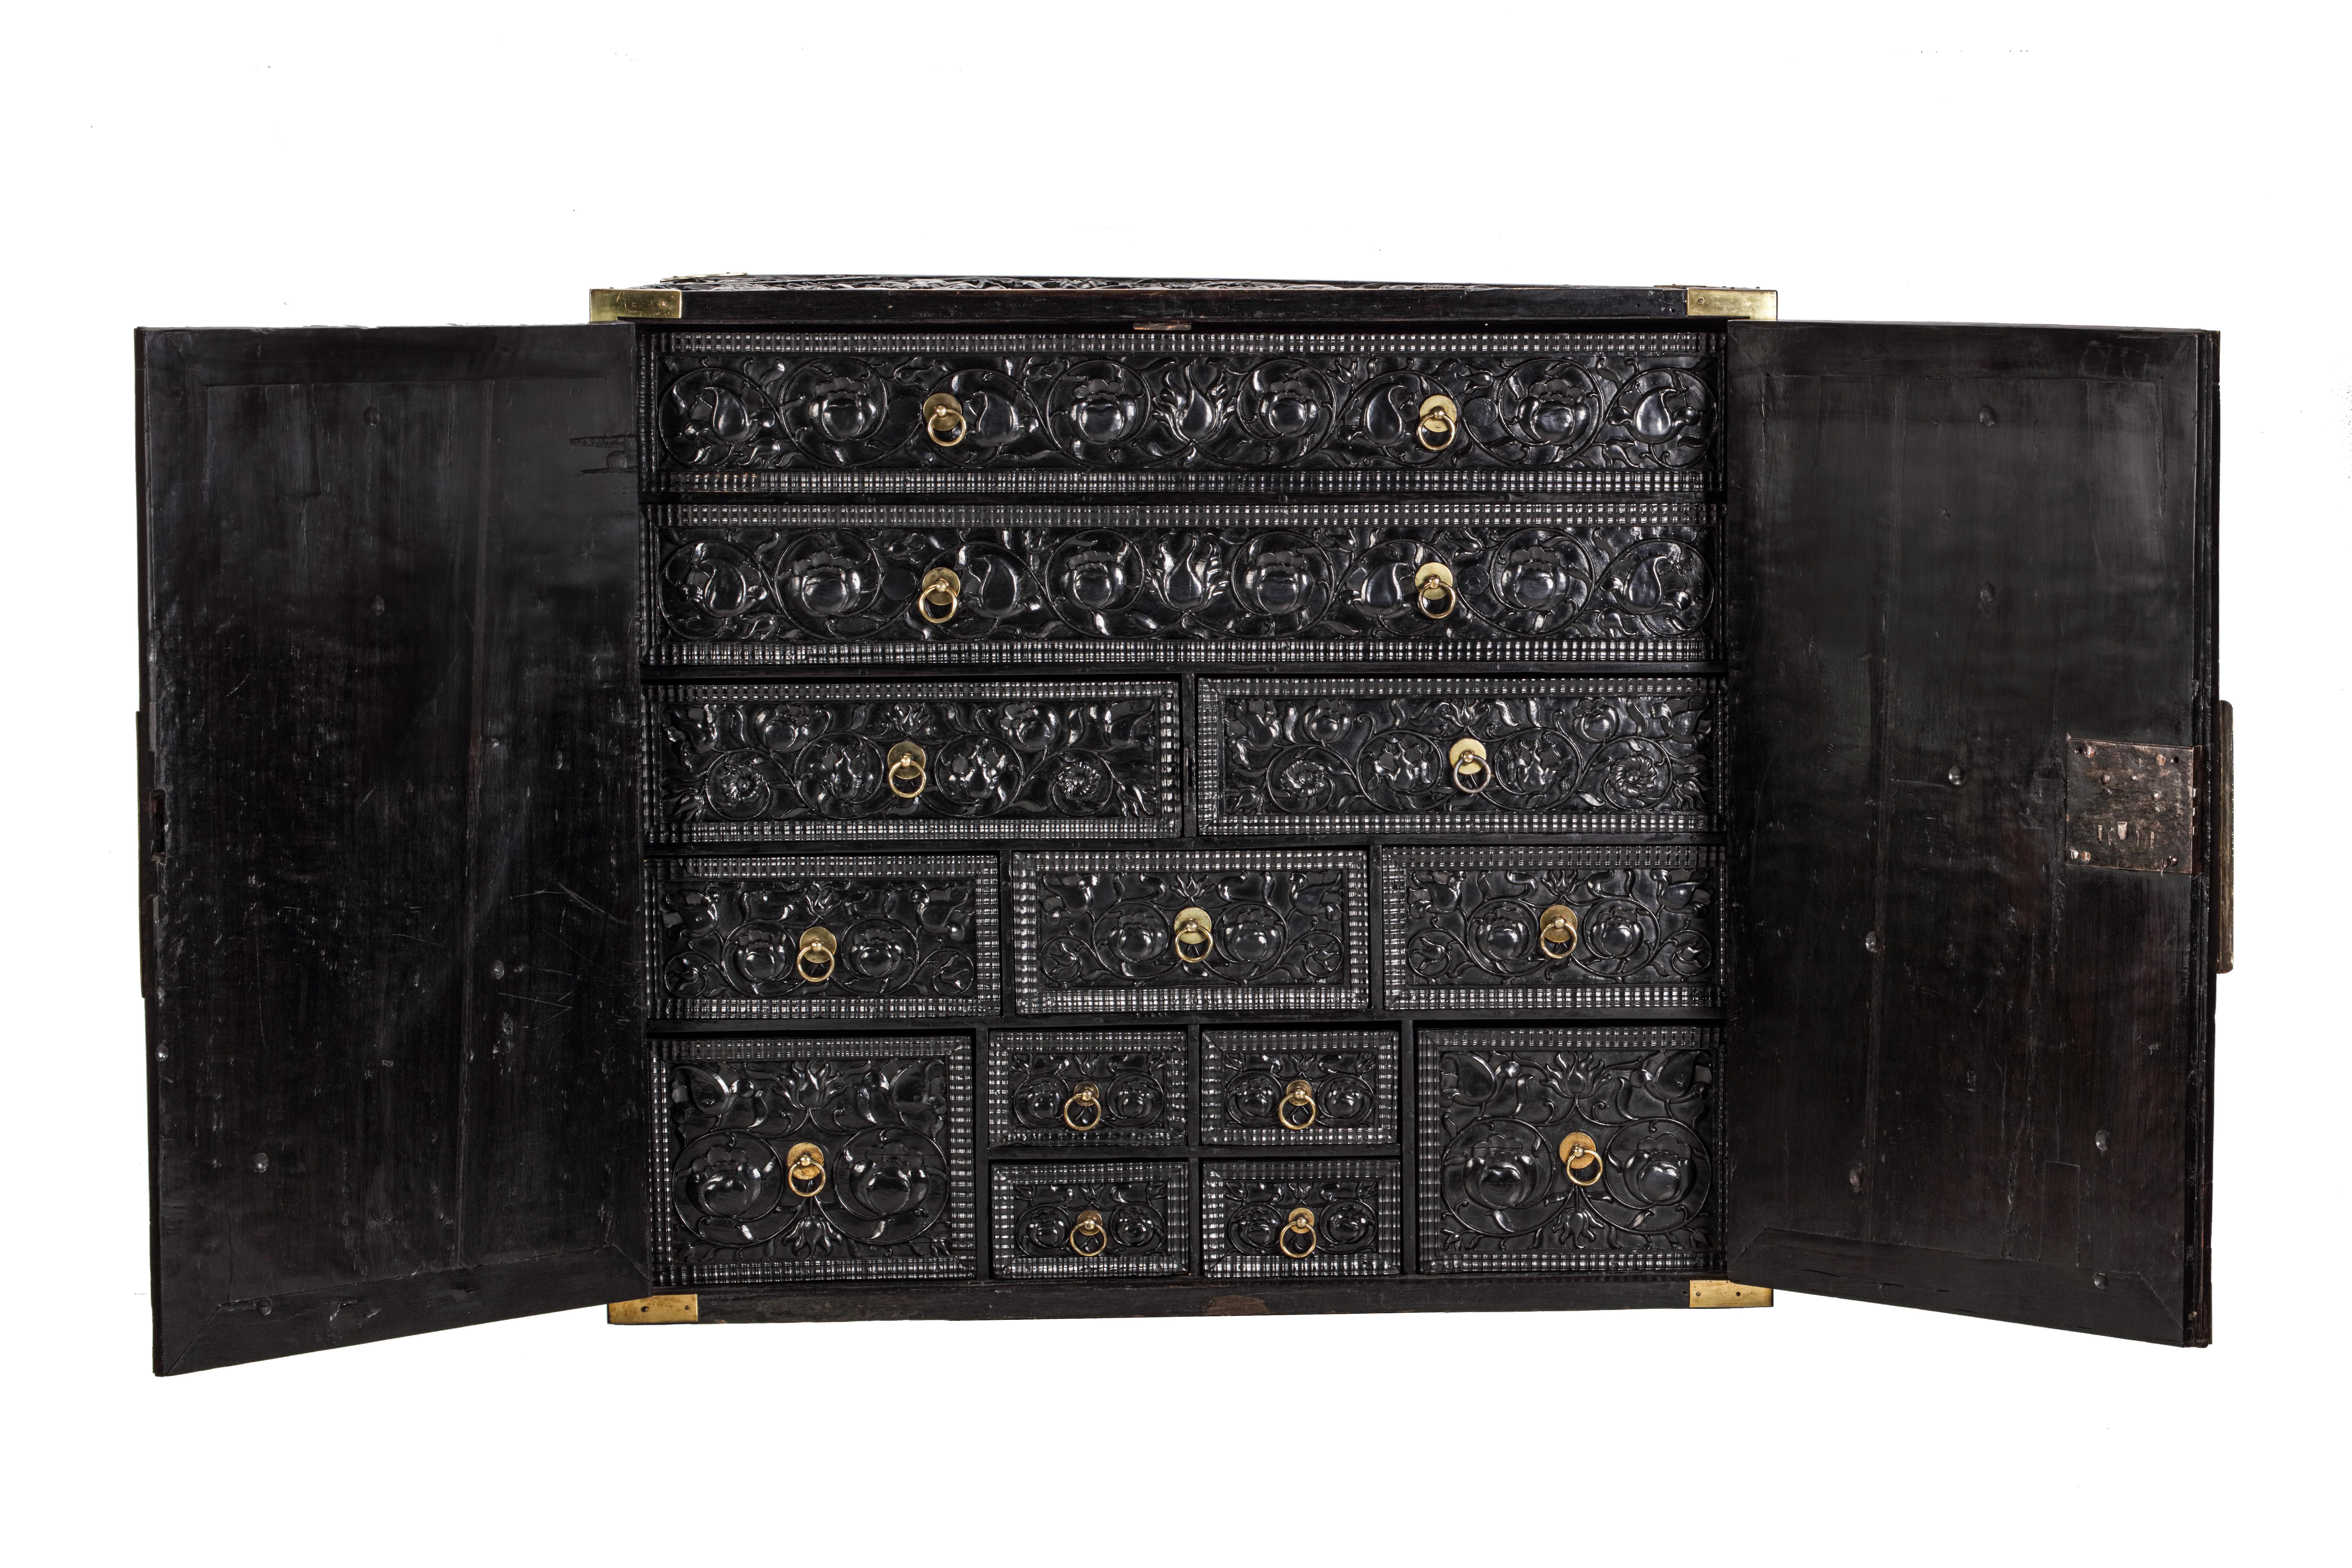 Cabinet colonial hollandais en ébène avec des montures en laiton sur un cadre contemporain en acier noir.

Batavia (Jakarta), 2e moitié du XVIIe siècle

Le meuble comporte deux portes massives en ébène qui s'ouvrent pour révéler treize tiroirs de